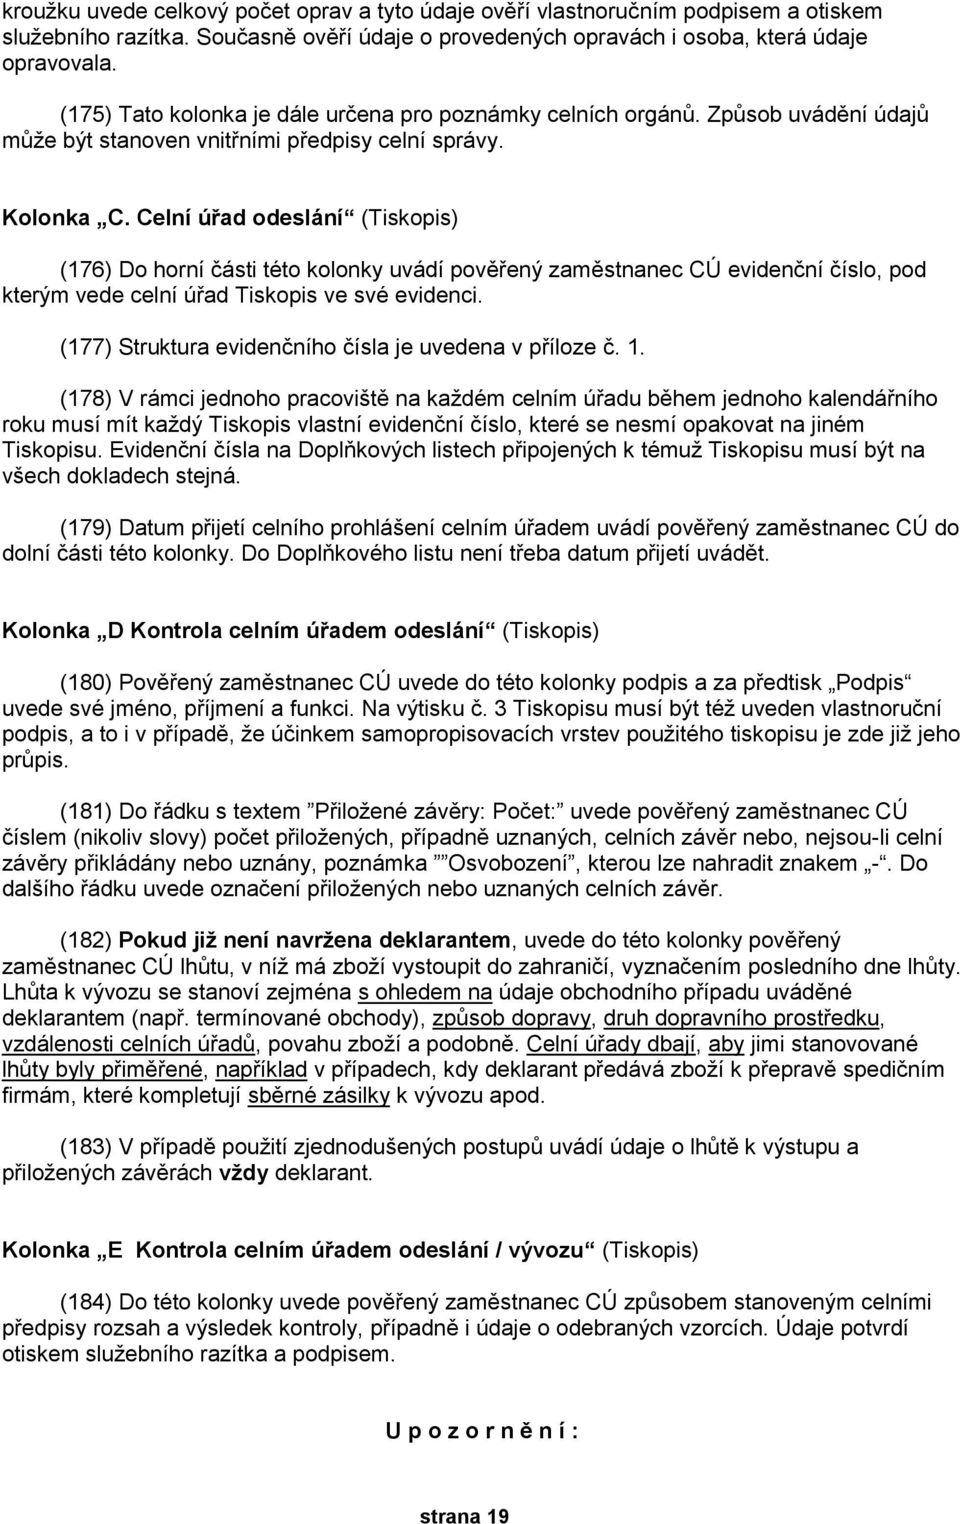 Celní úřad odeslání (Tiskopis) (176) Do horní části této kolonky uvádí pověřený zaměstnanec CÚ evidenční číslo, pod kterým vede celní úřad Tiskopis ve své evidenci.